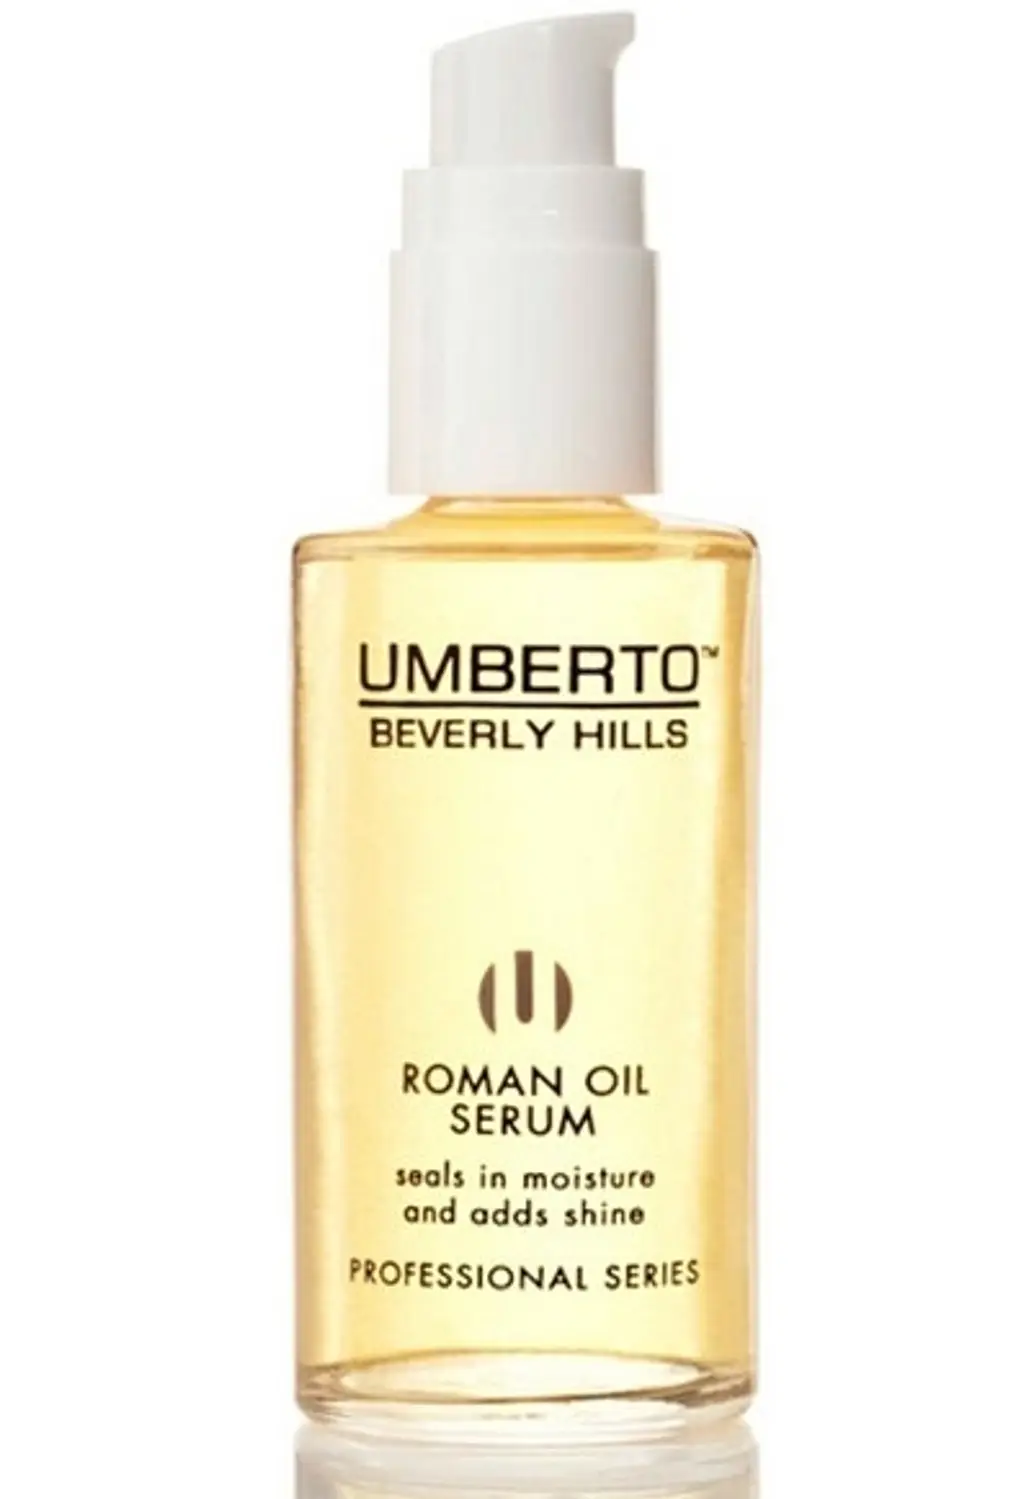 Umberto Roman Oil Serum